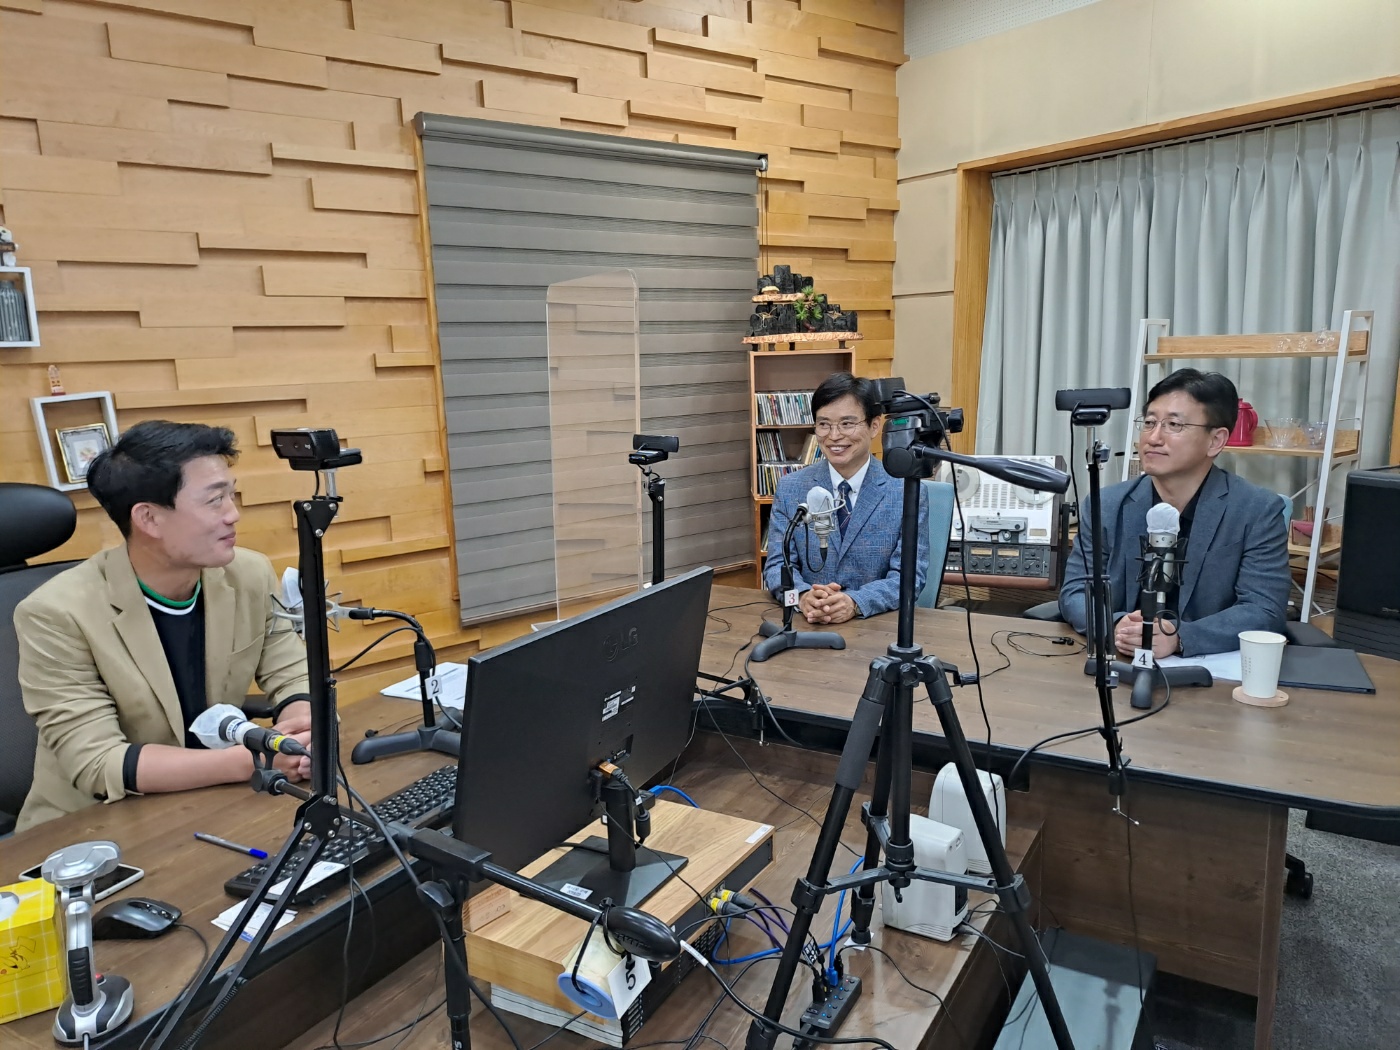 KBS 제1라디오 전주방송 터놓고 말합시다 전북, 이차전지 중심지 될까?